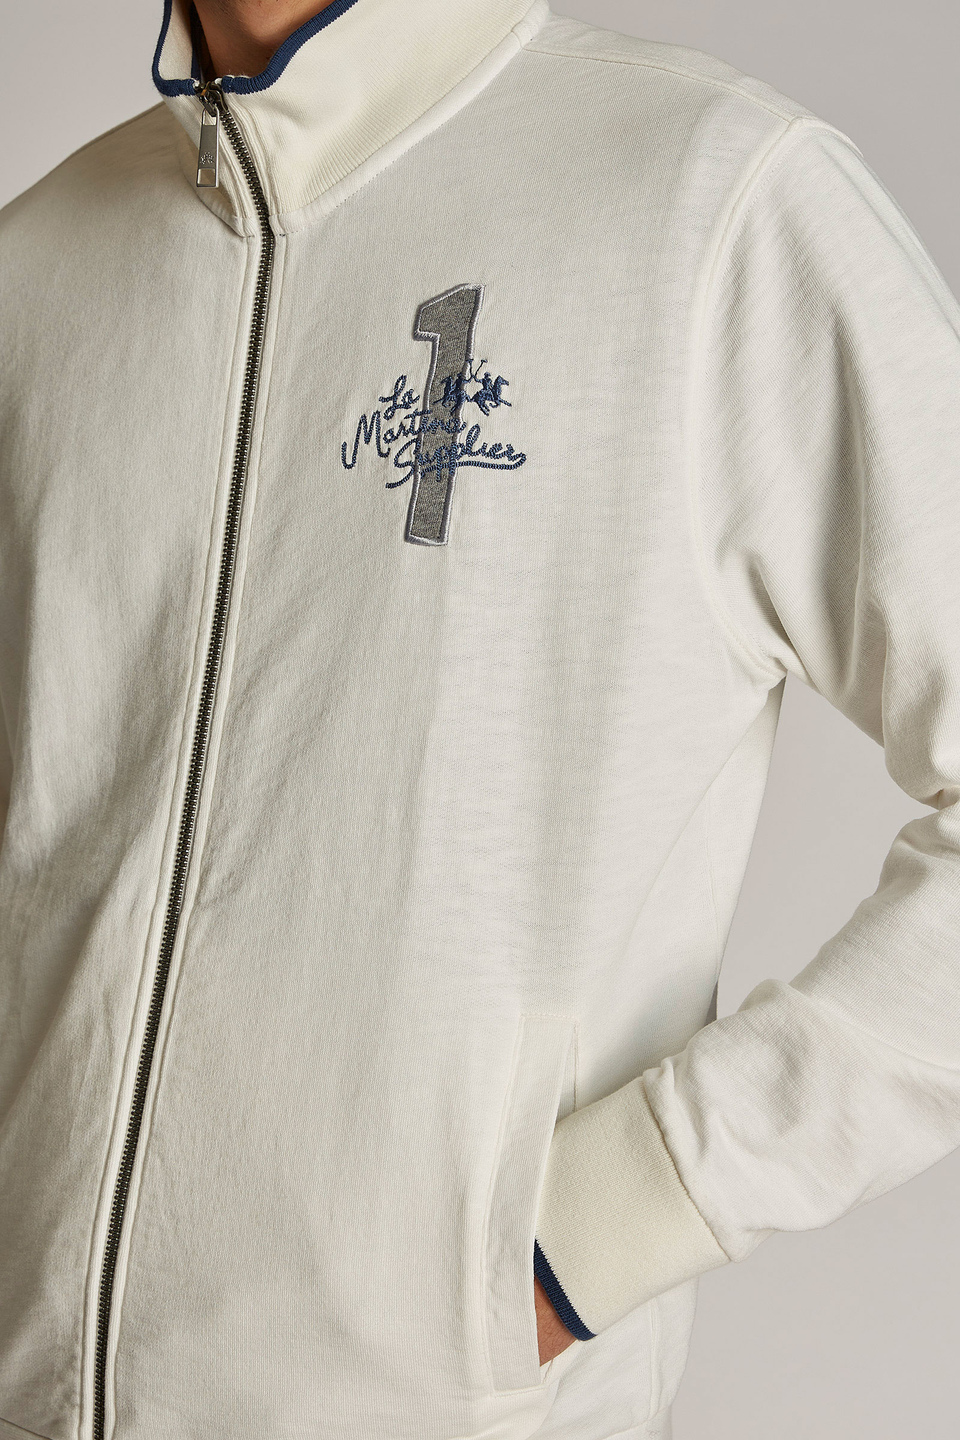 Sweat-shirt homme 100% coton avec fermeture zippée et coupe classique - La Martina - Official Online Shop